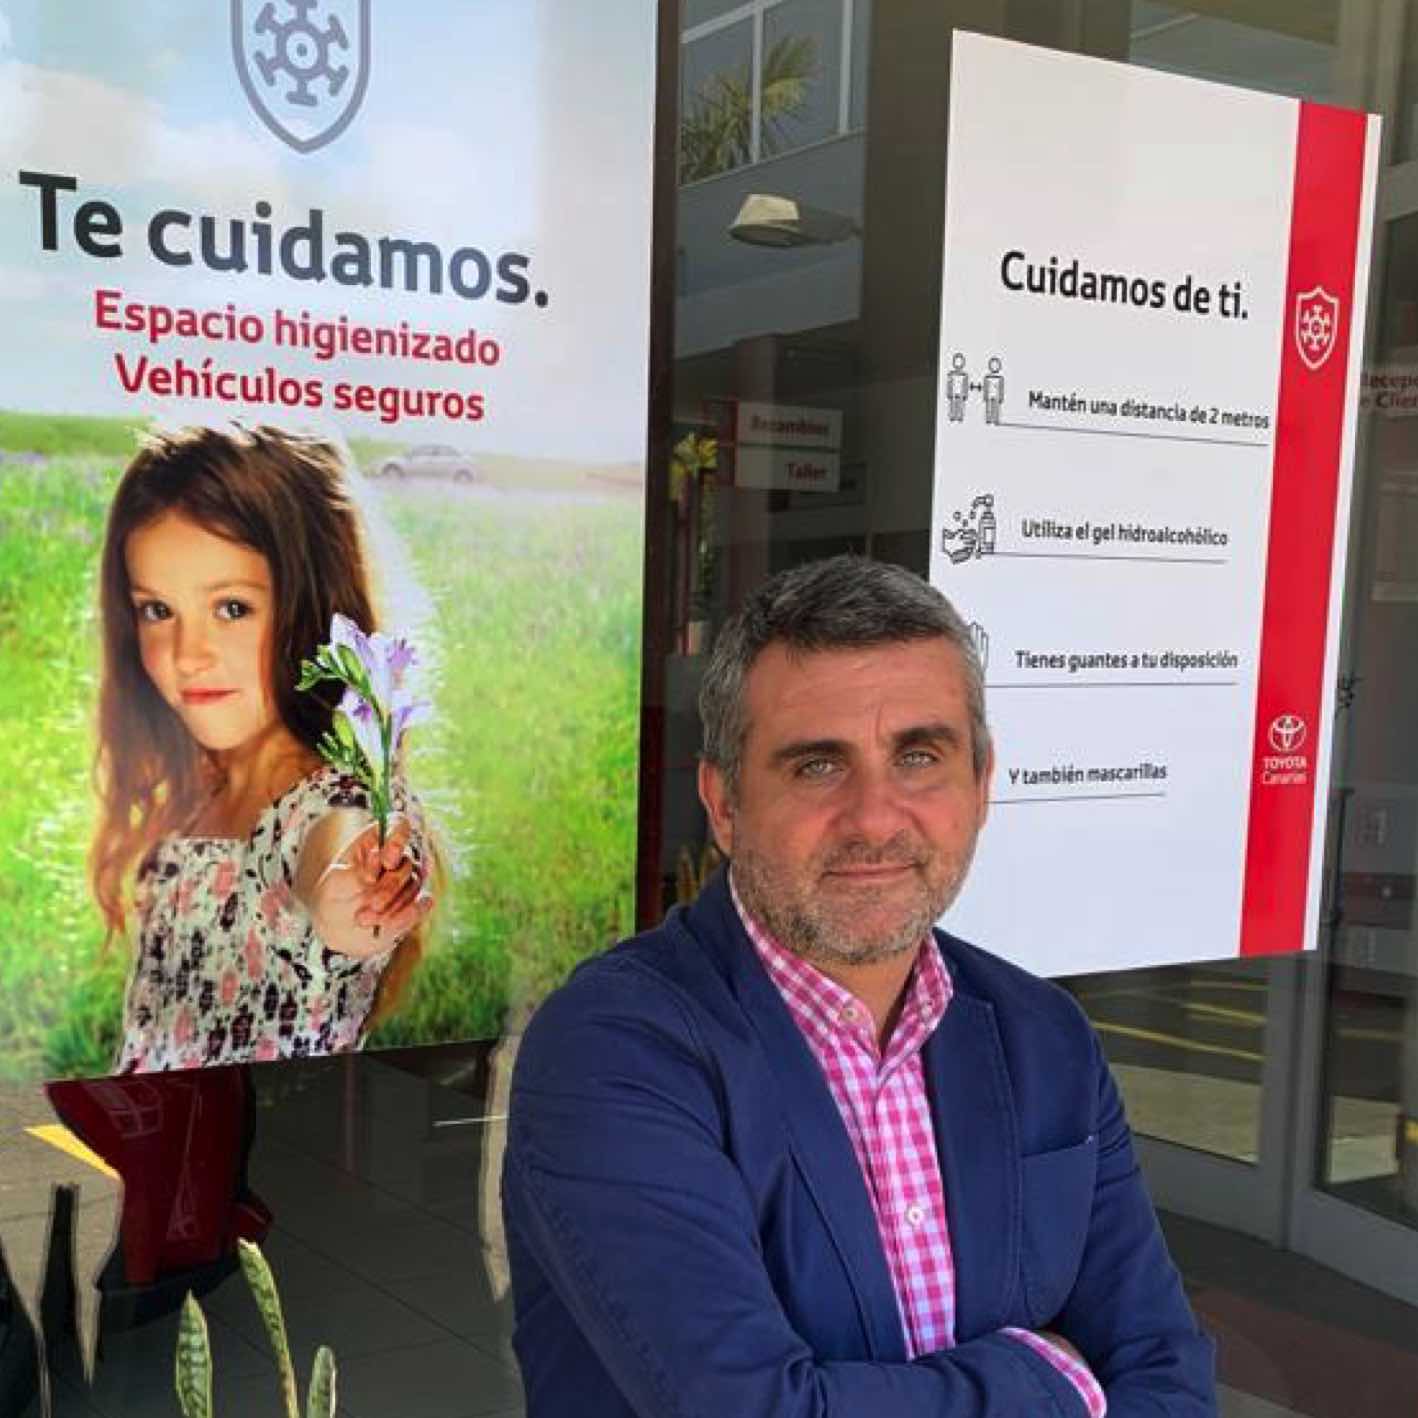 Alberto Morera: “Nos sorprende que después de mantener varias reuniones, ahora el borrador del decreto no recoja la zona industrial del Callejón de La Gata”